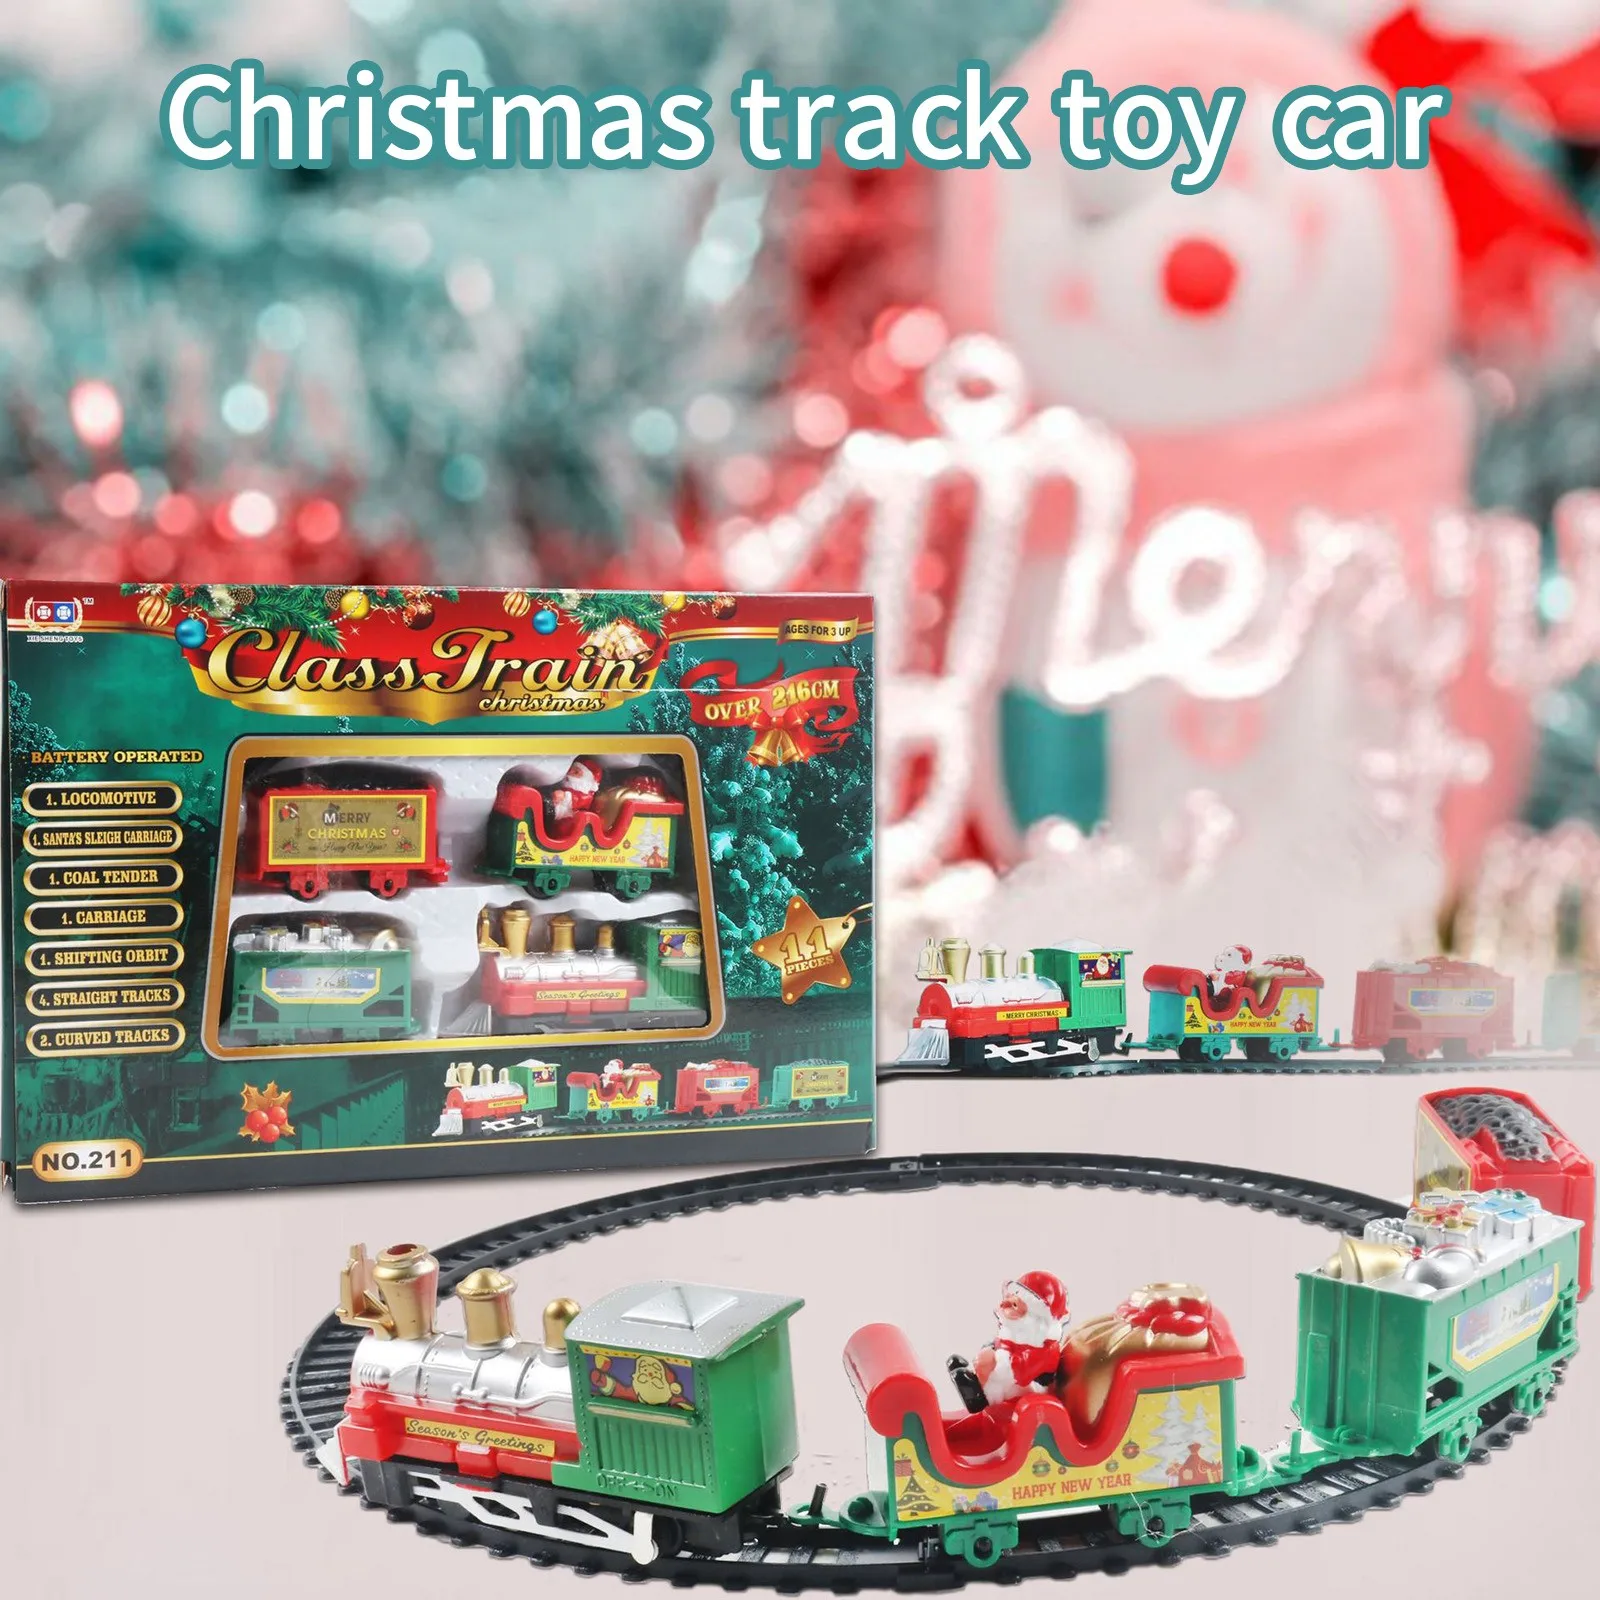 

Набор рождественского электрического поезда 216 см, трек для окружности, игрушечный поезд на батарейках, реалистичный Рождественский электр...